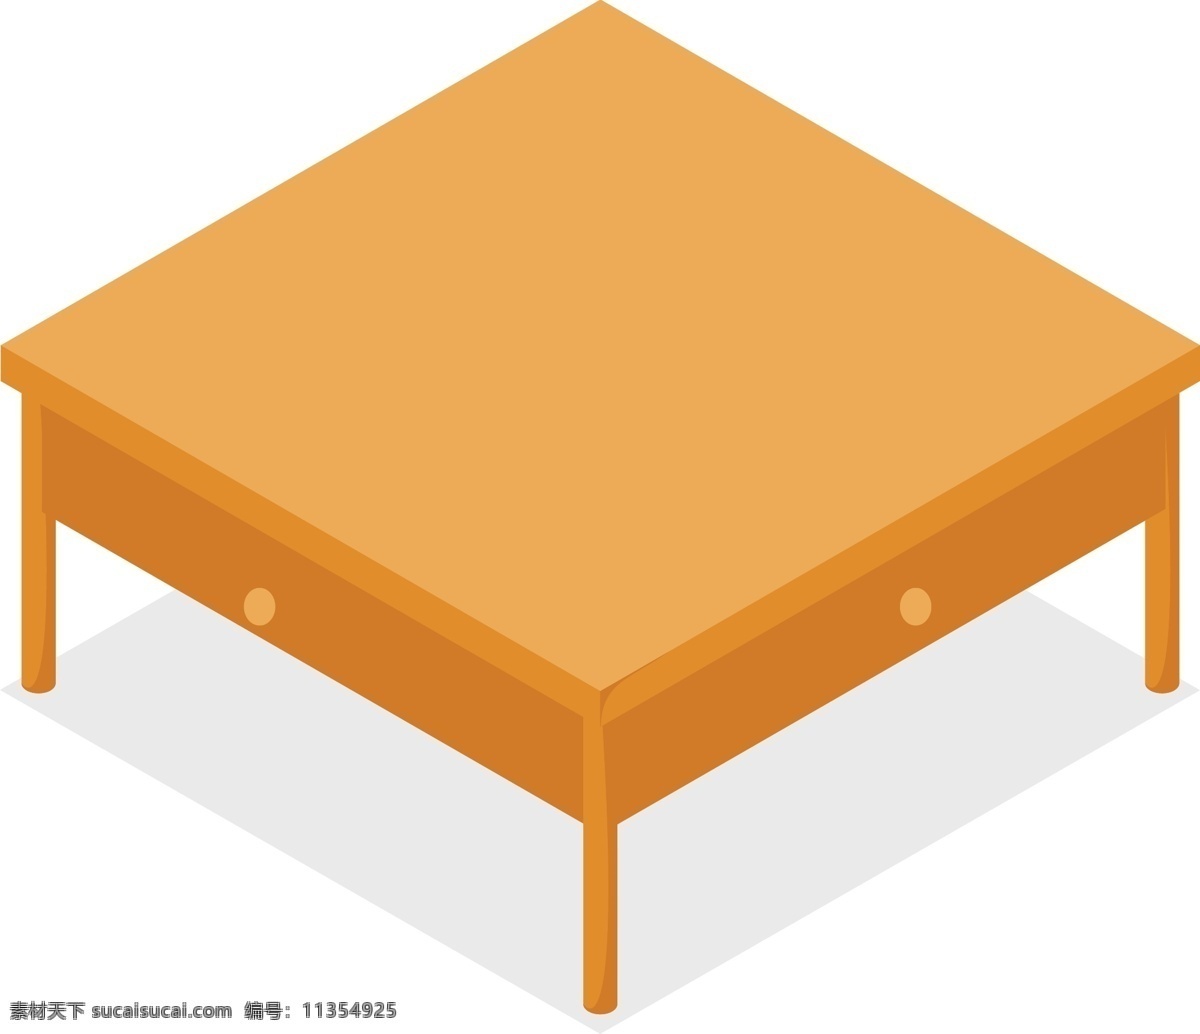 黄色 正方形 餐桌 插画 木桌 桌子 家具 木制 小木桌 方桌 正方形小餐桌 黄色小方桌 饭桌 抽屉桌子